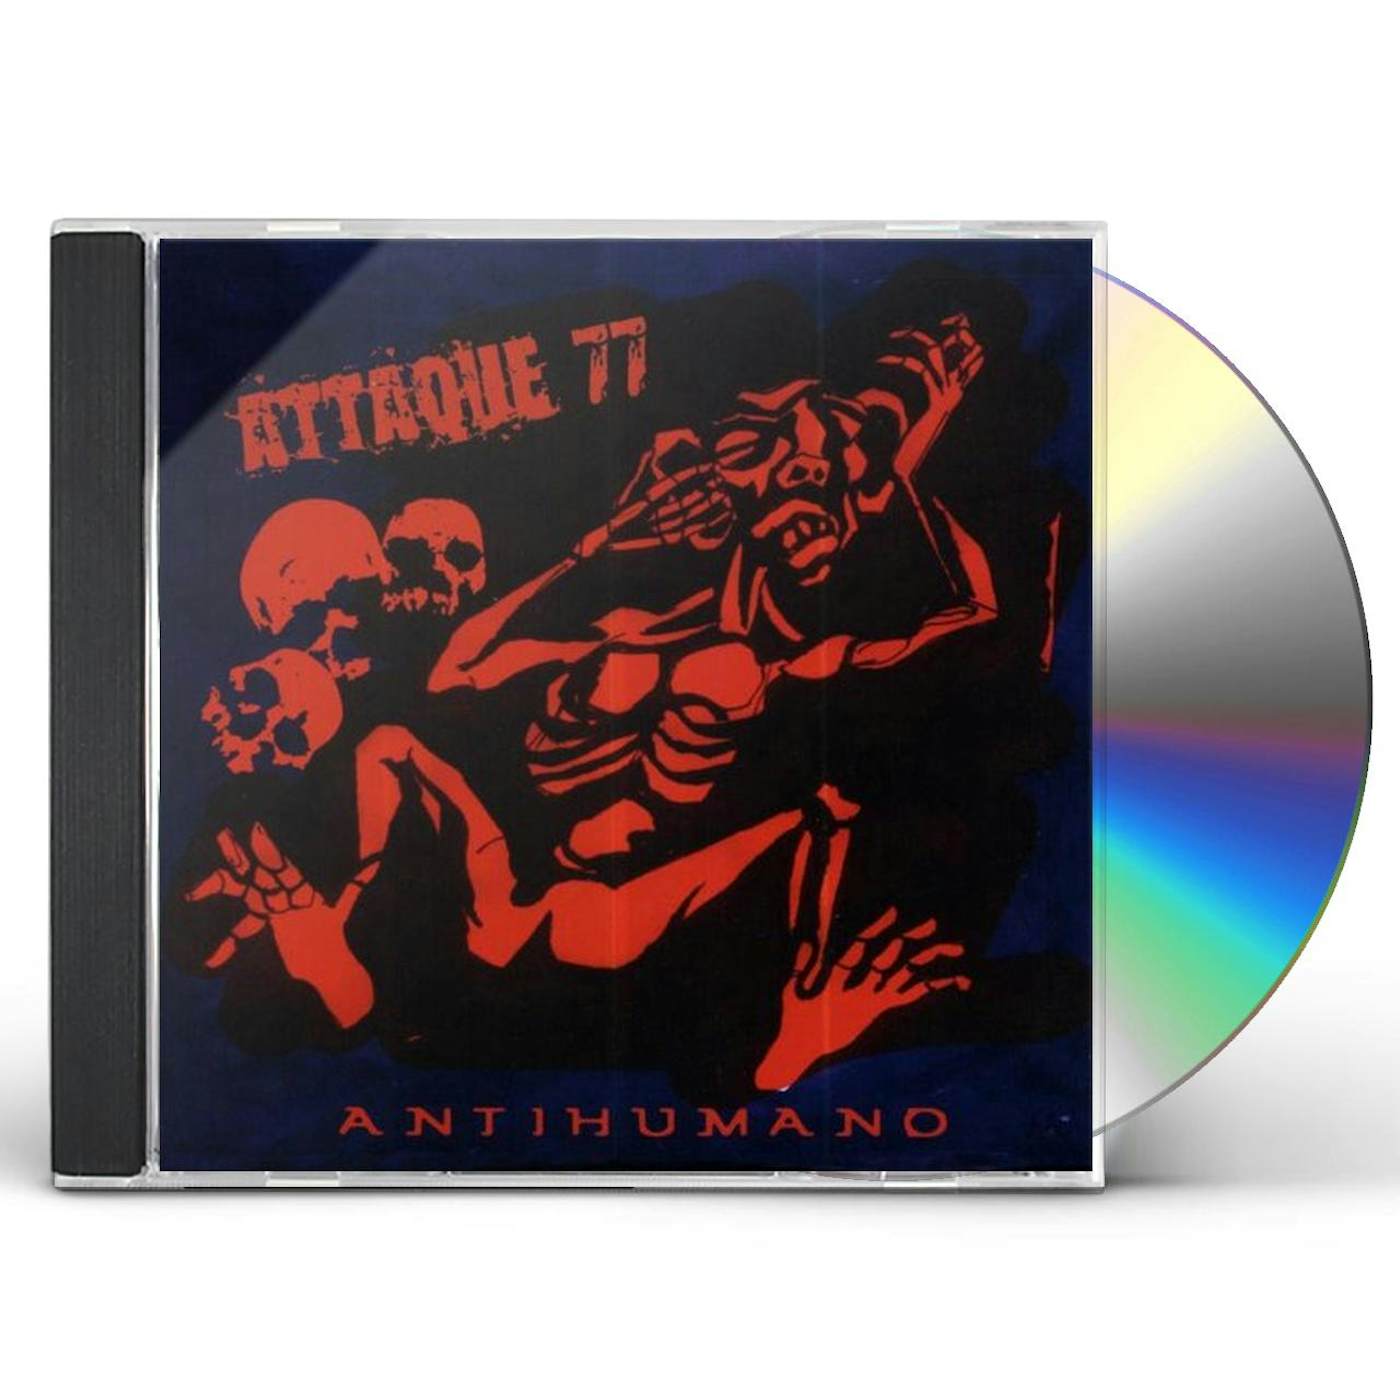 Attaque 77 ANTIHUMANO CD